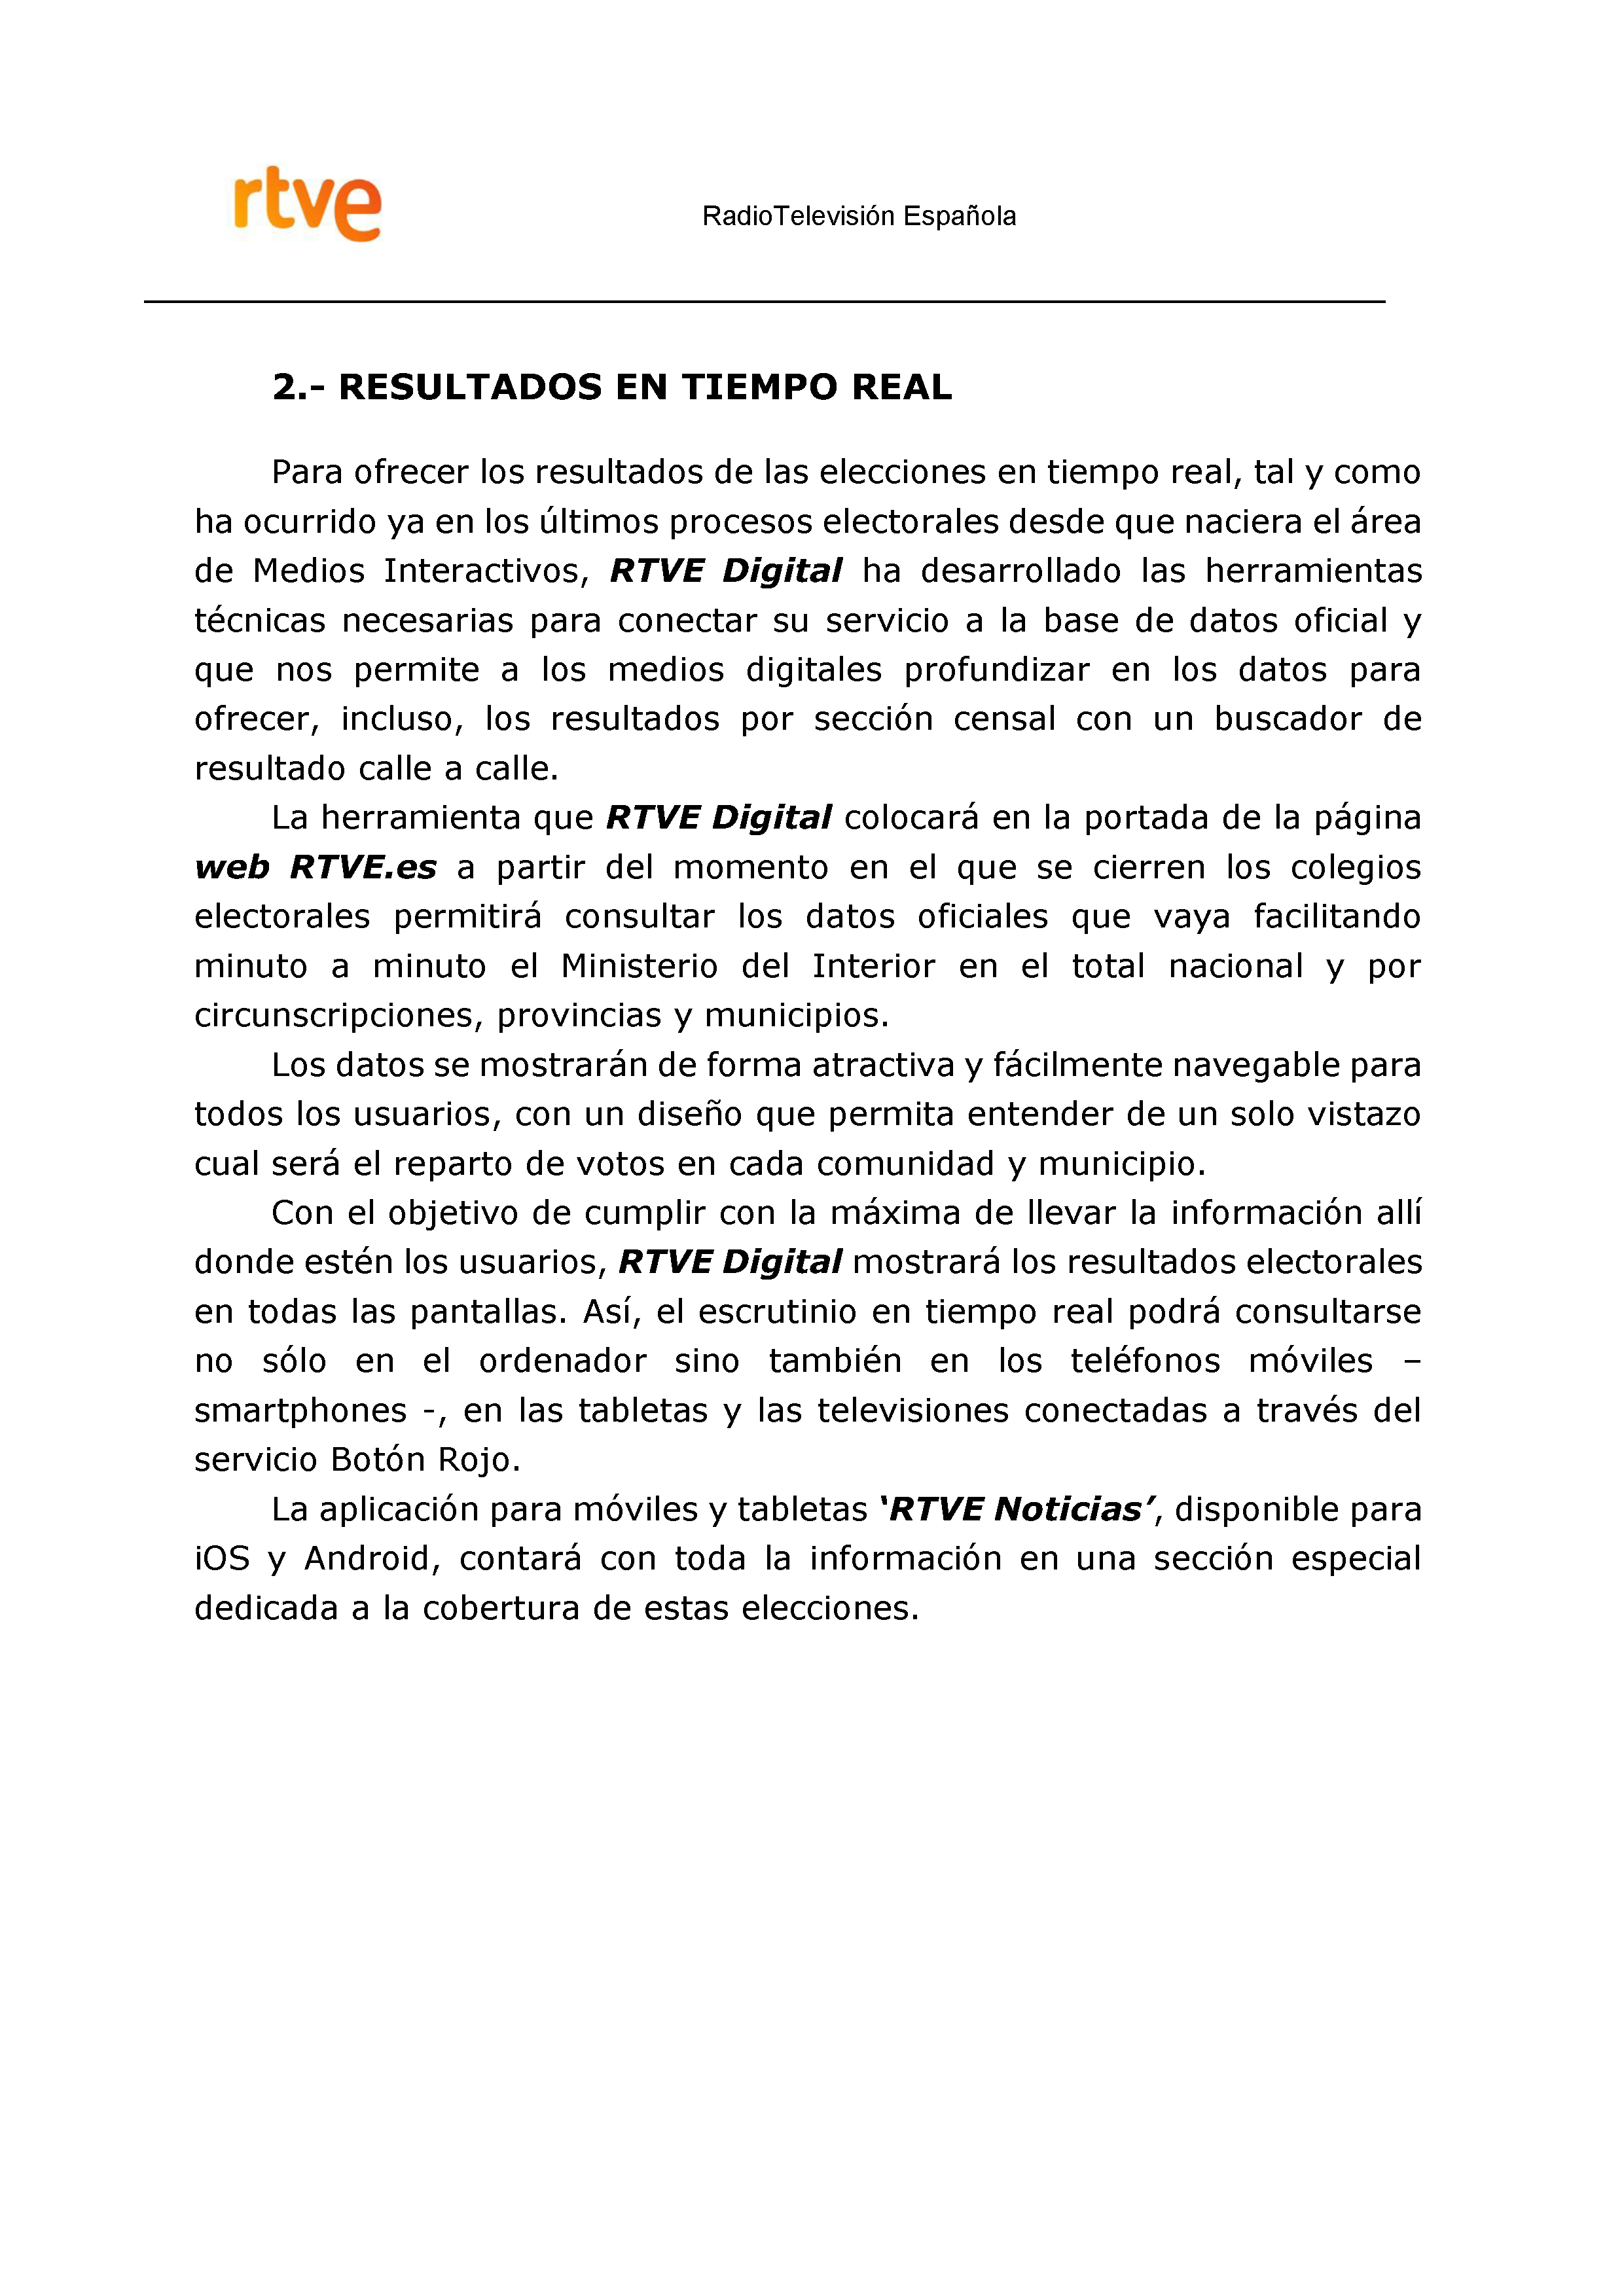 PLAN DE COBERTURA INFORMATIVA RTVE en Extremadura ELECCIONES MUNICIPALES Y AUTONÓMICAS Pag 14